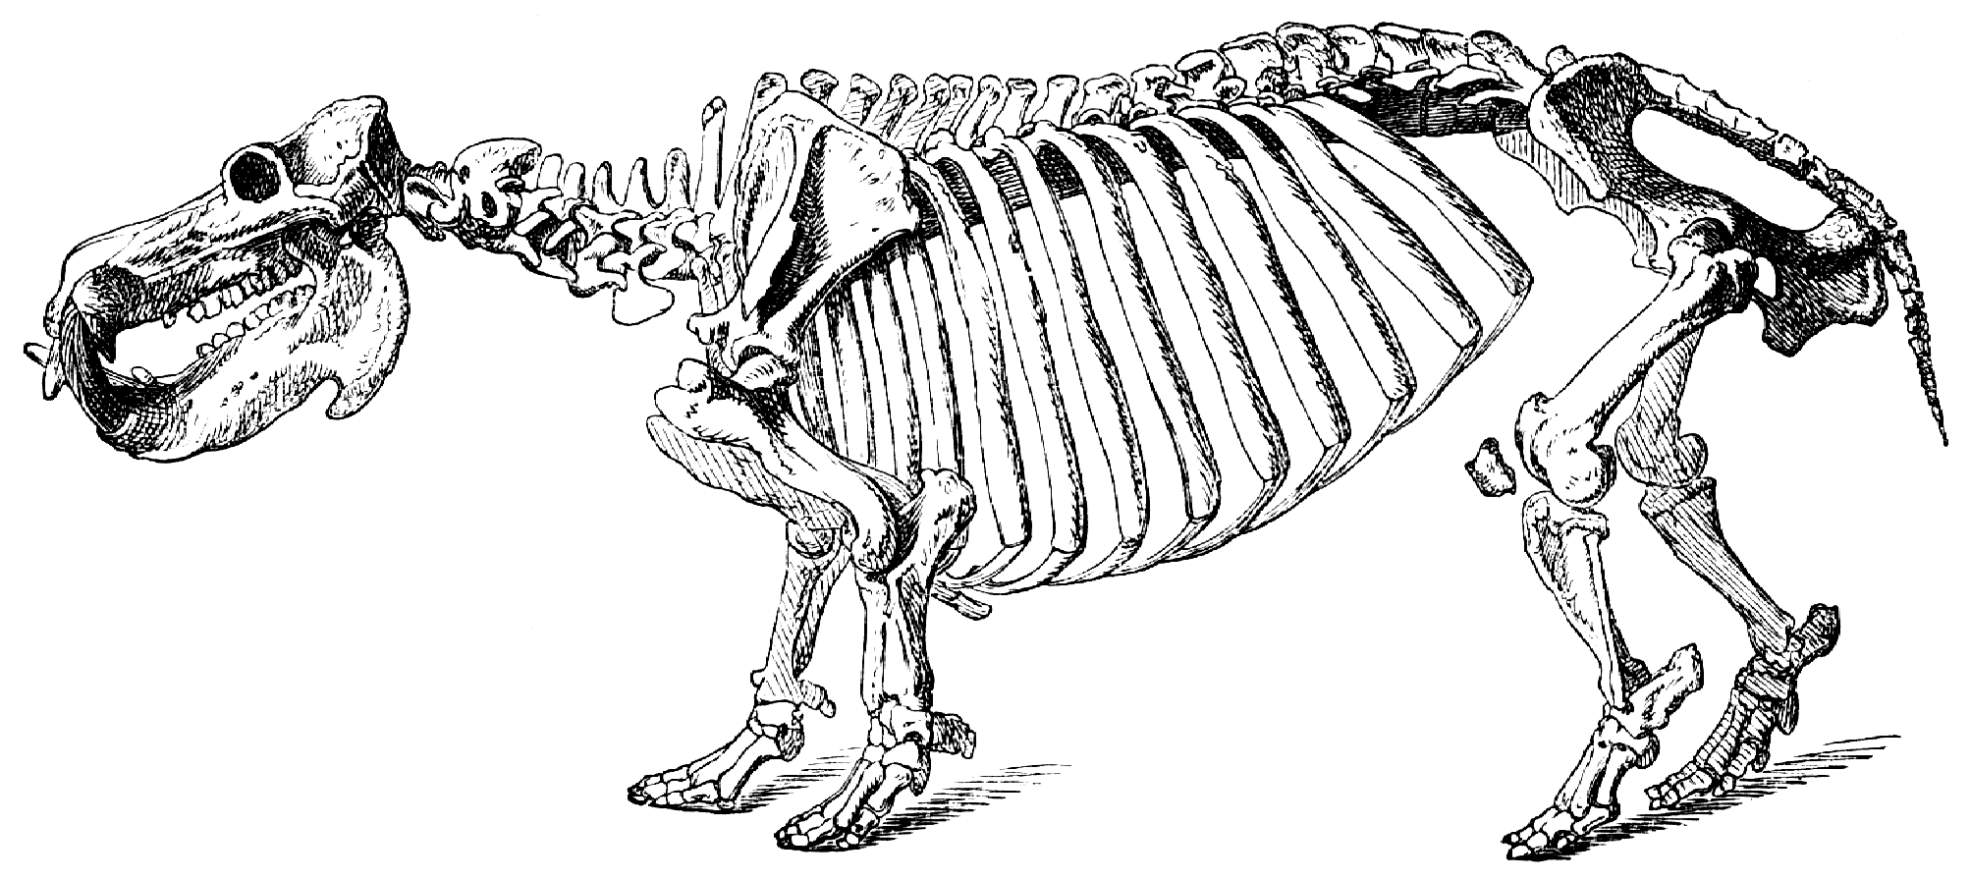 Скелет бегемота с анатомией